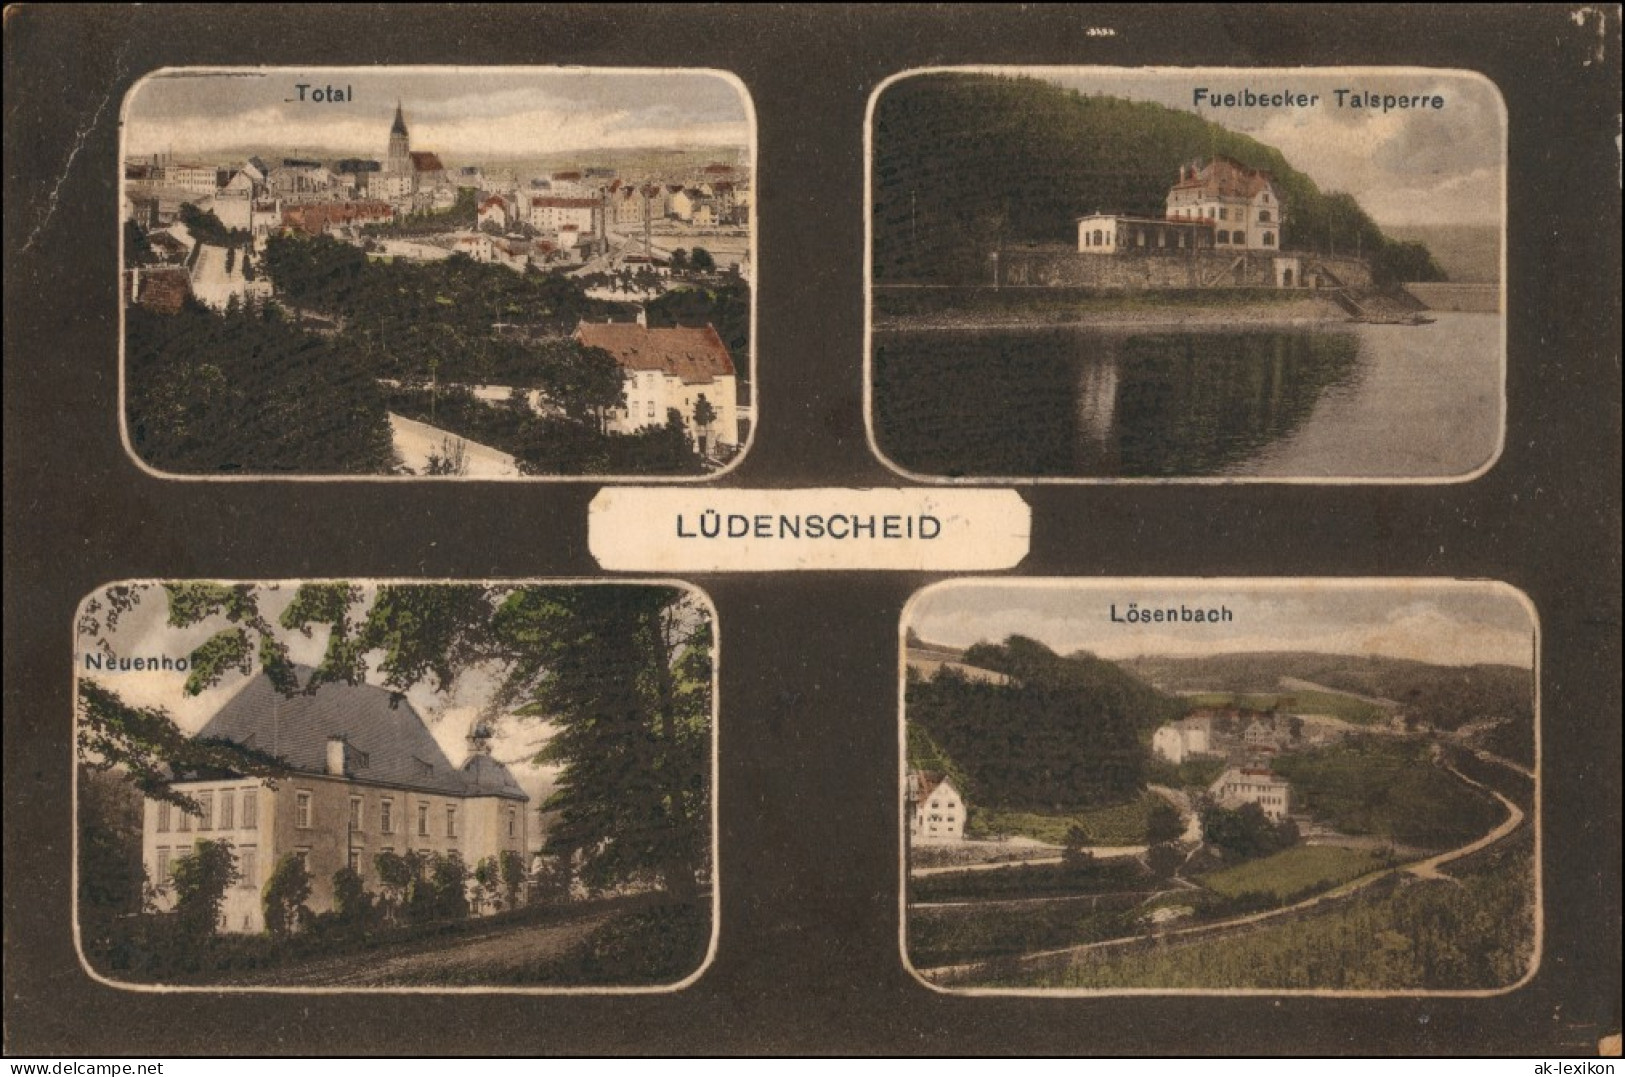 Ansichtskarte Lüdenscheid 4 Bild Totale, Lösenbach, Neuenhof 1922 - Lüdenscheid